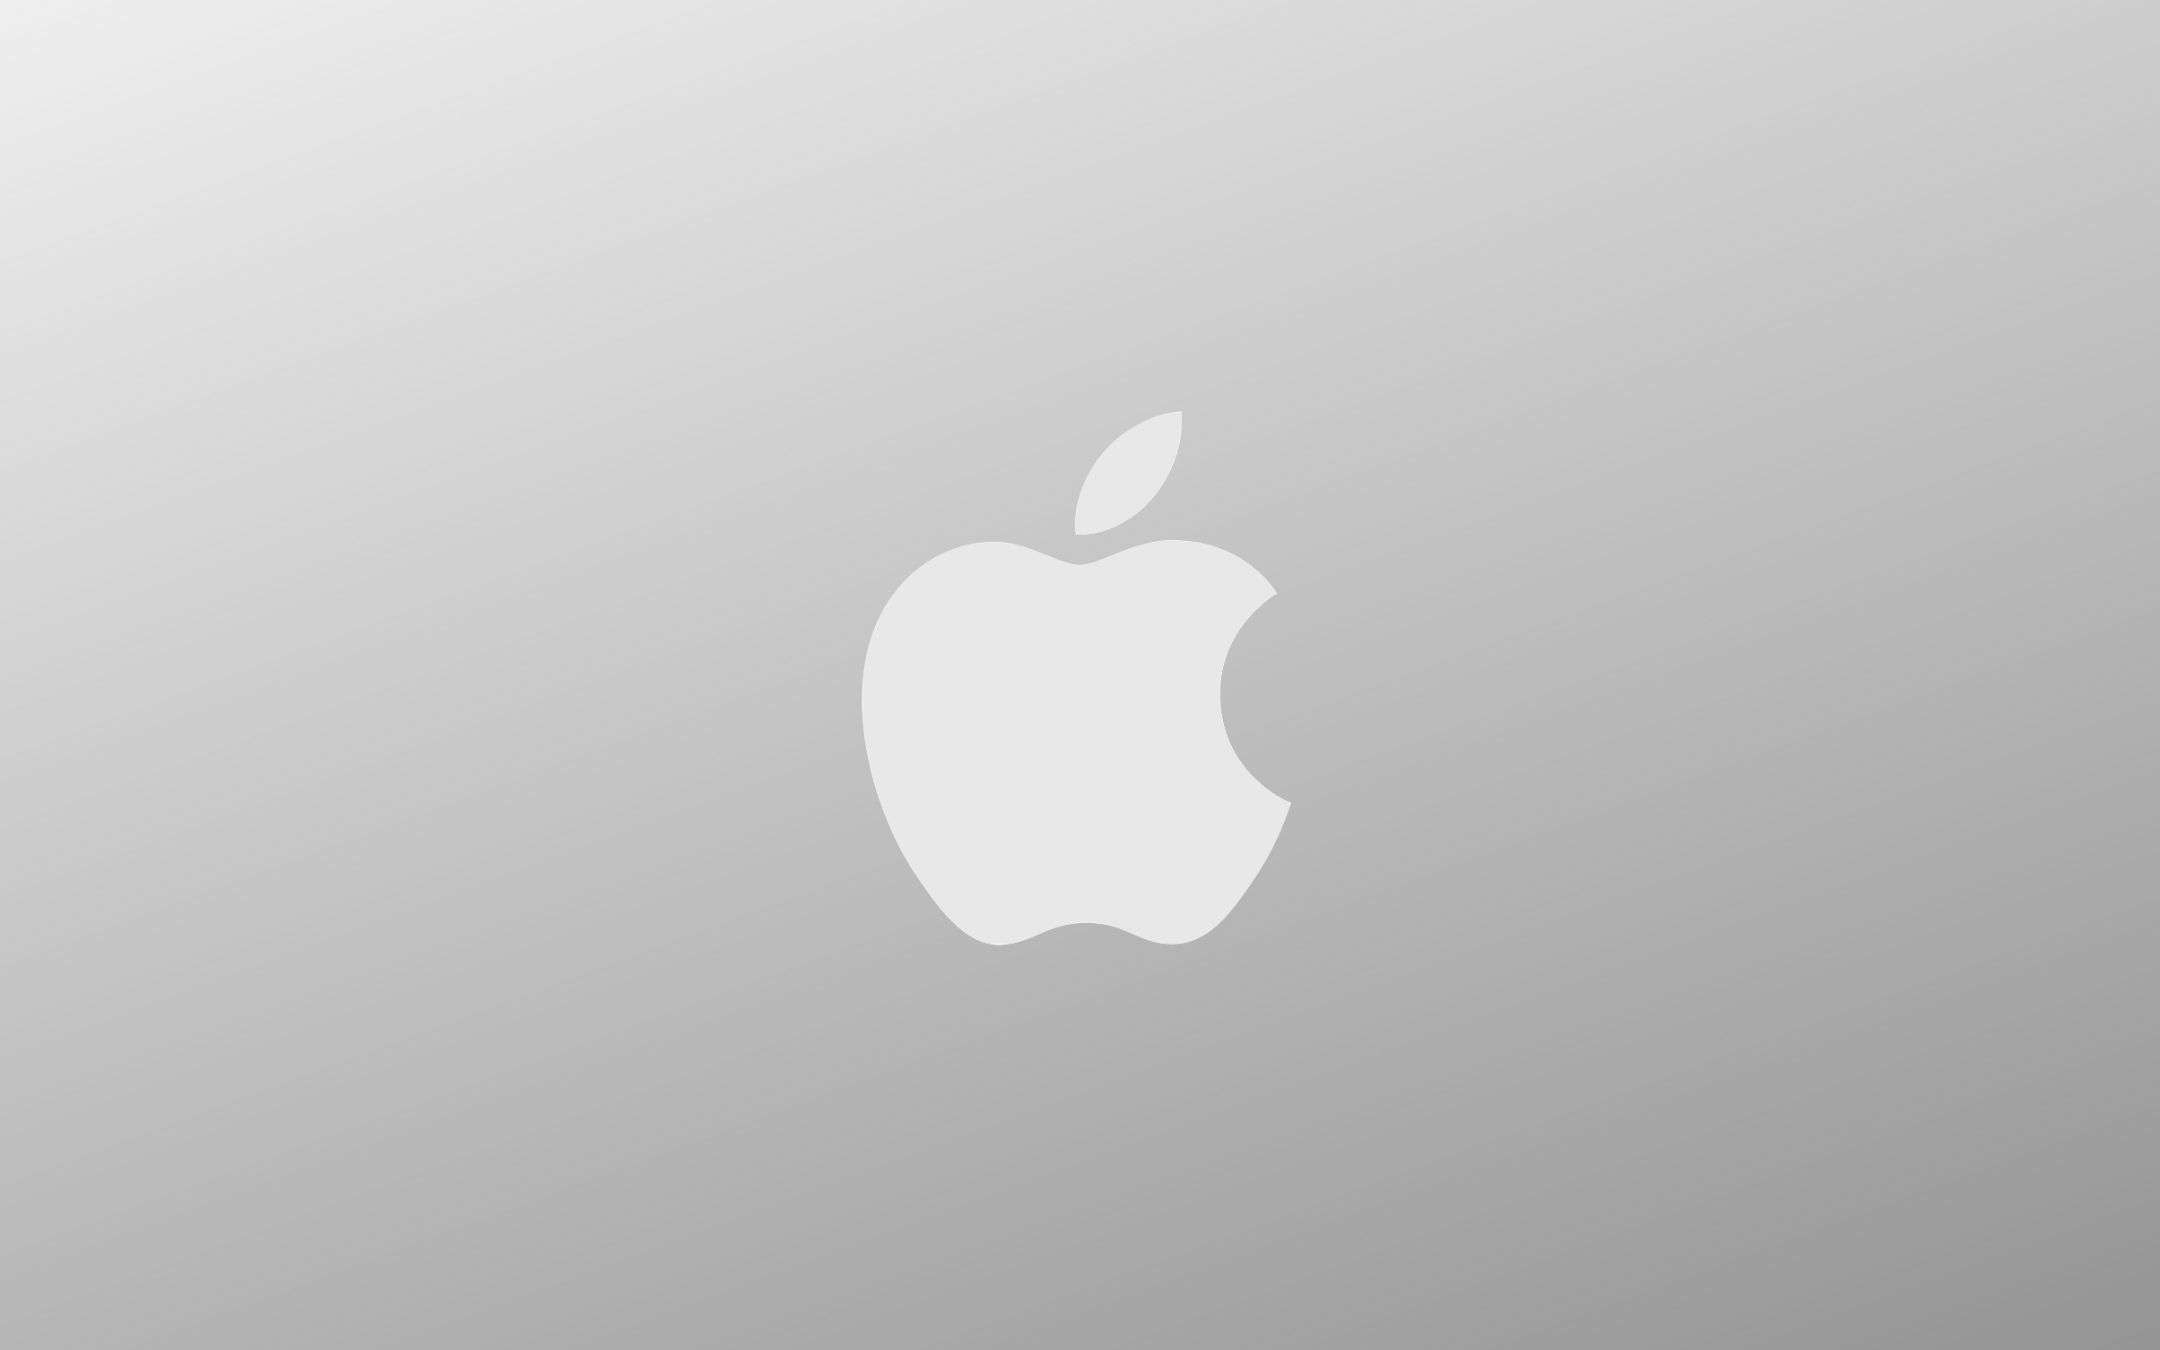 Apple chiude (ancora) altri negozi a causa del CoVid-19